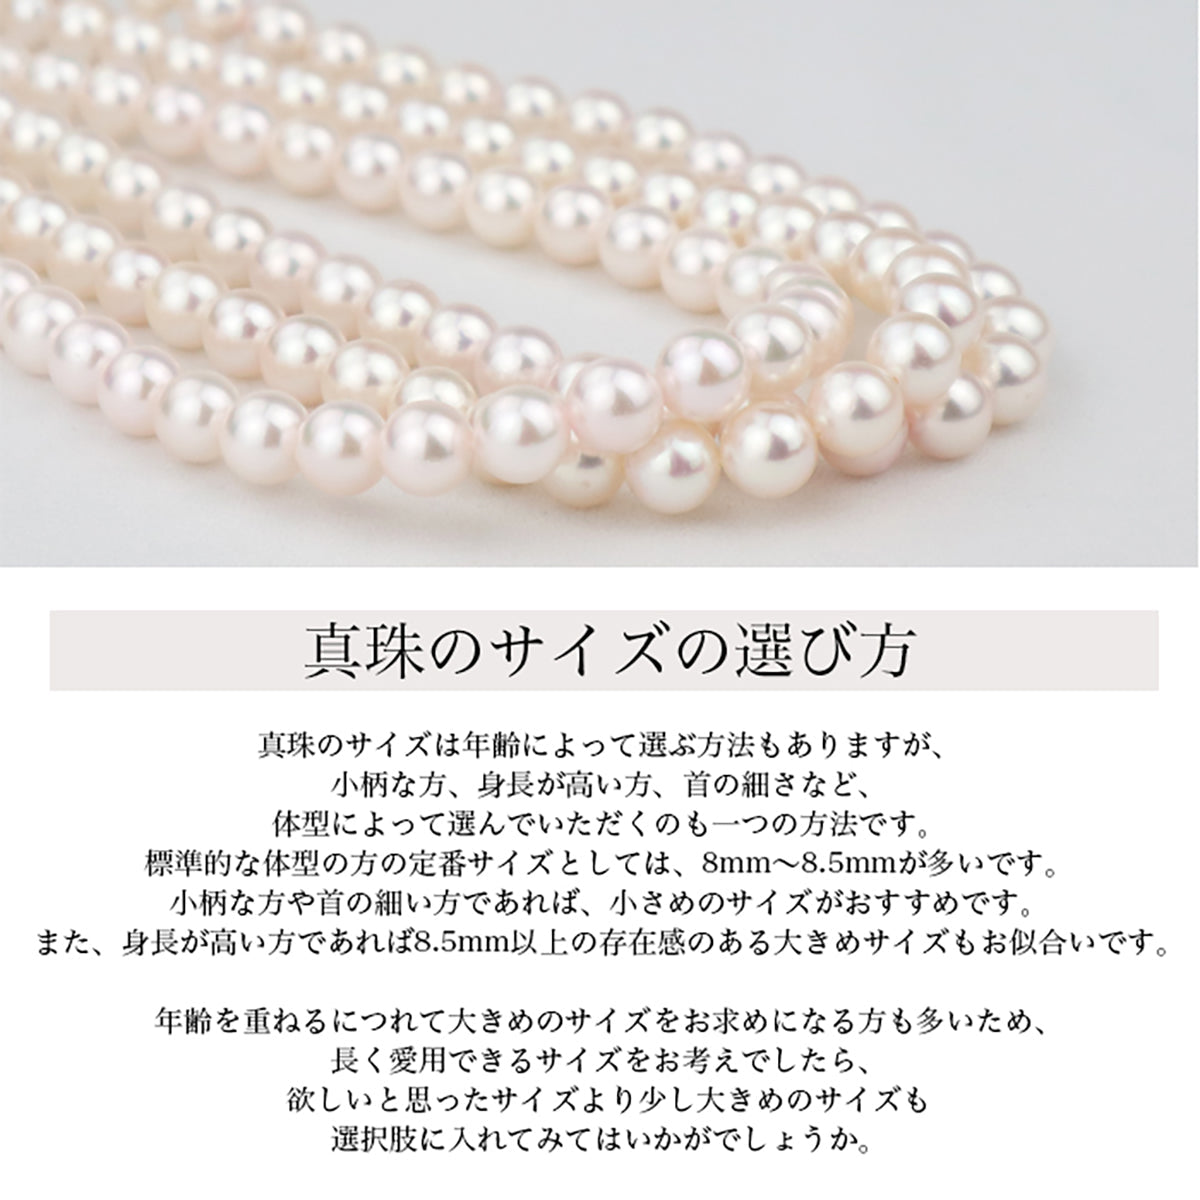 [花玉认证珍珠] 正装项链 2 件装 [8.5-9.0 毫米]（含耳环）Akoya 珍珠带收纳盒 [新日本珍珠研究所真品证书]